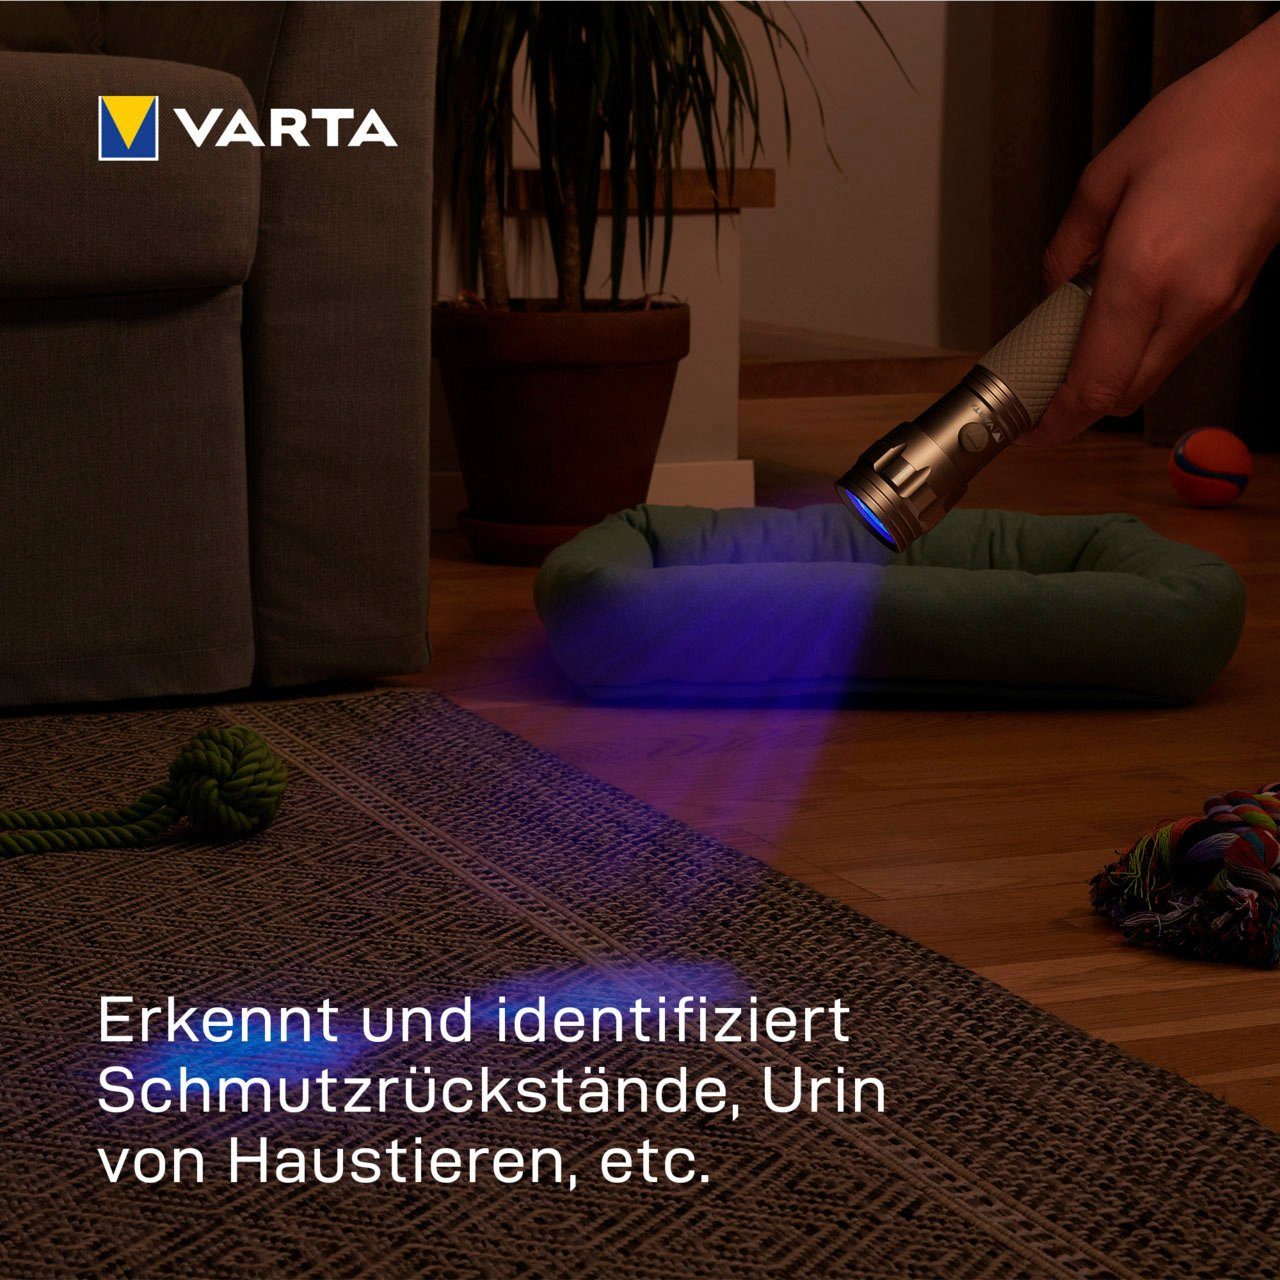 VARTA Taschenlampe UV Licht Leuchte mit macht (Set), Hygienehilfe sichtbar Unsichtbares Schwarzlicht